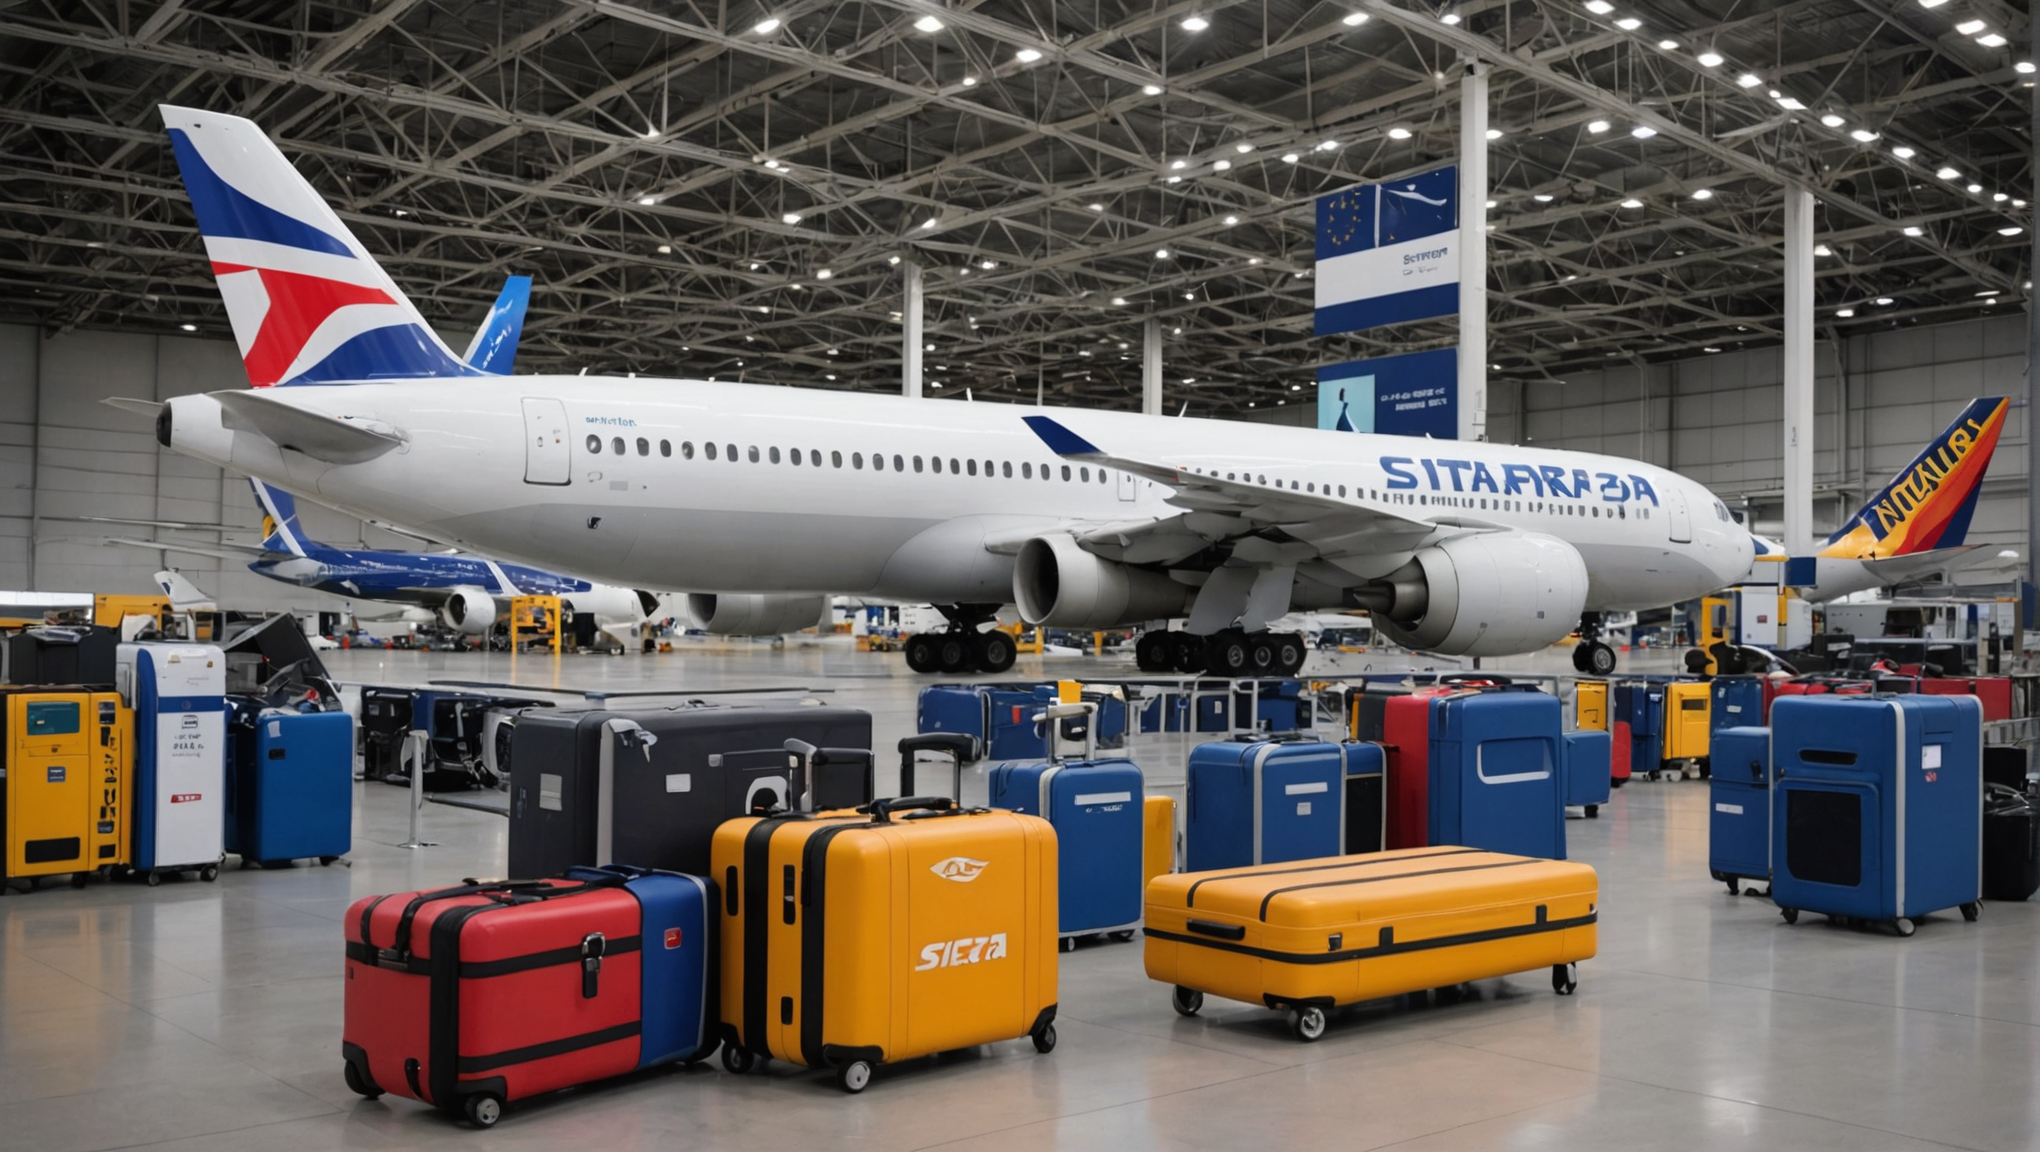 découvrez le rapport sita mettant en lumière les compagnies aériennes européennes les plus améliorées dans la gestion moins problématique des bagages.